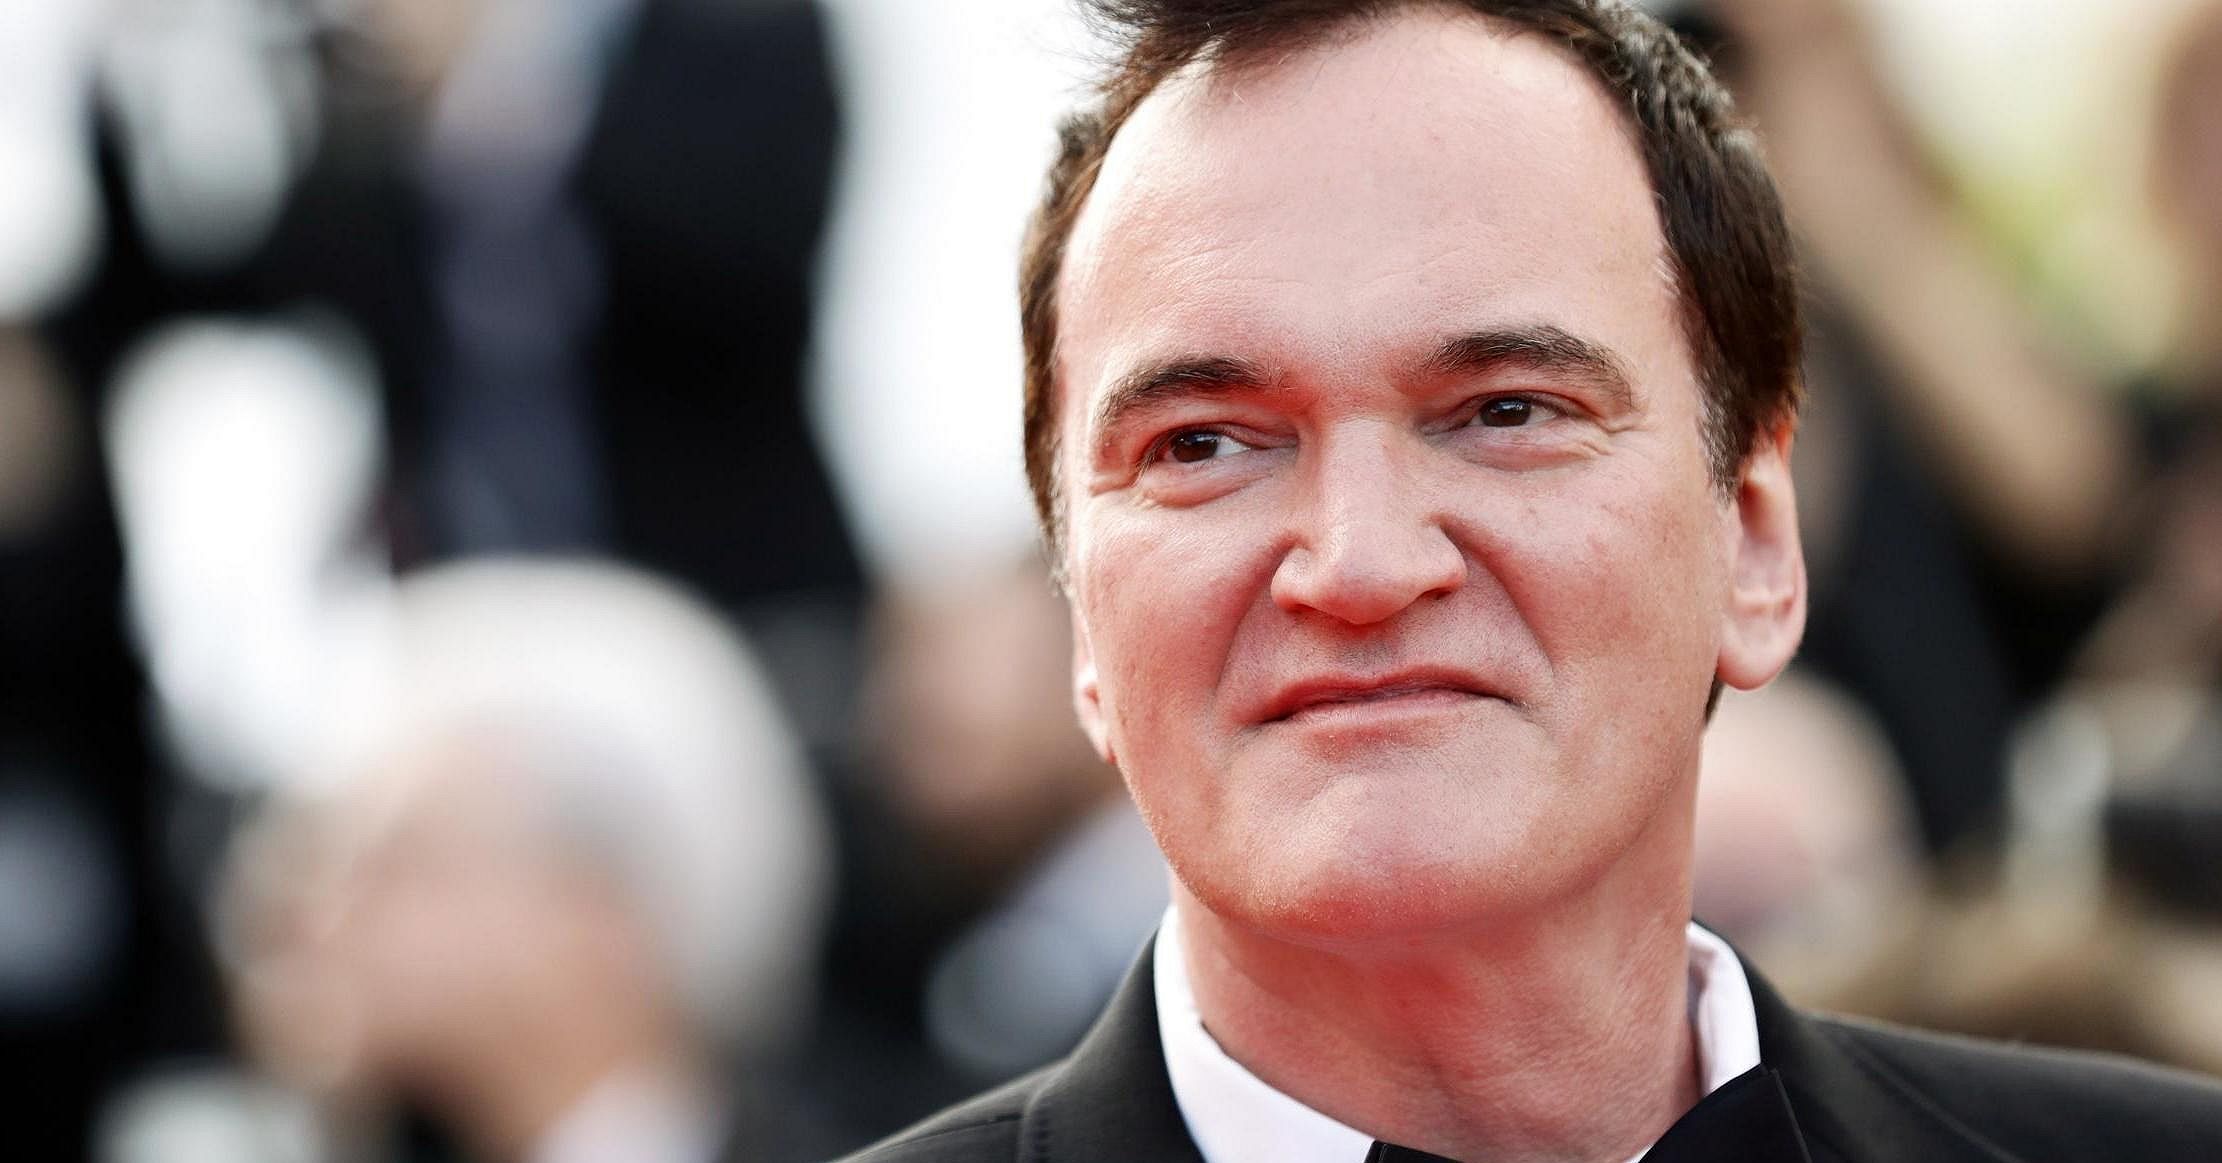 Quentin Tarantino non intende fare cinecomics: "Alla Marvel hanno le mani legate"